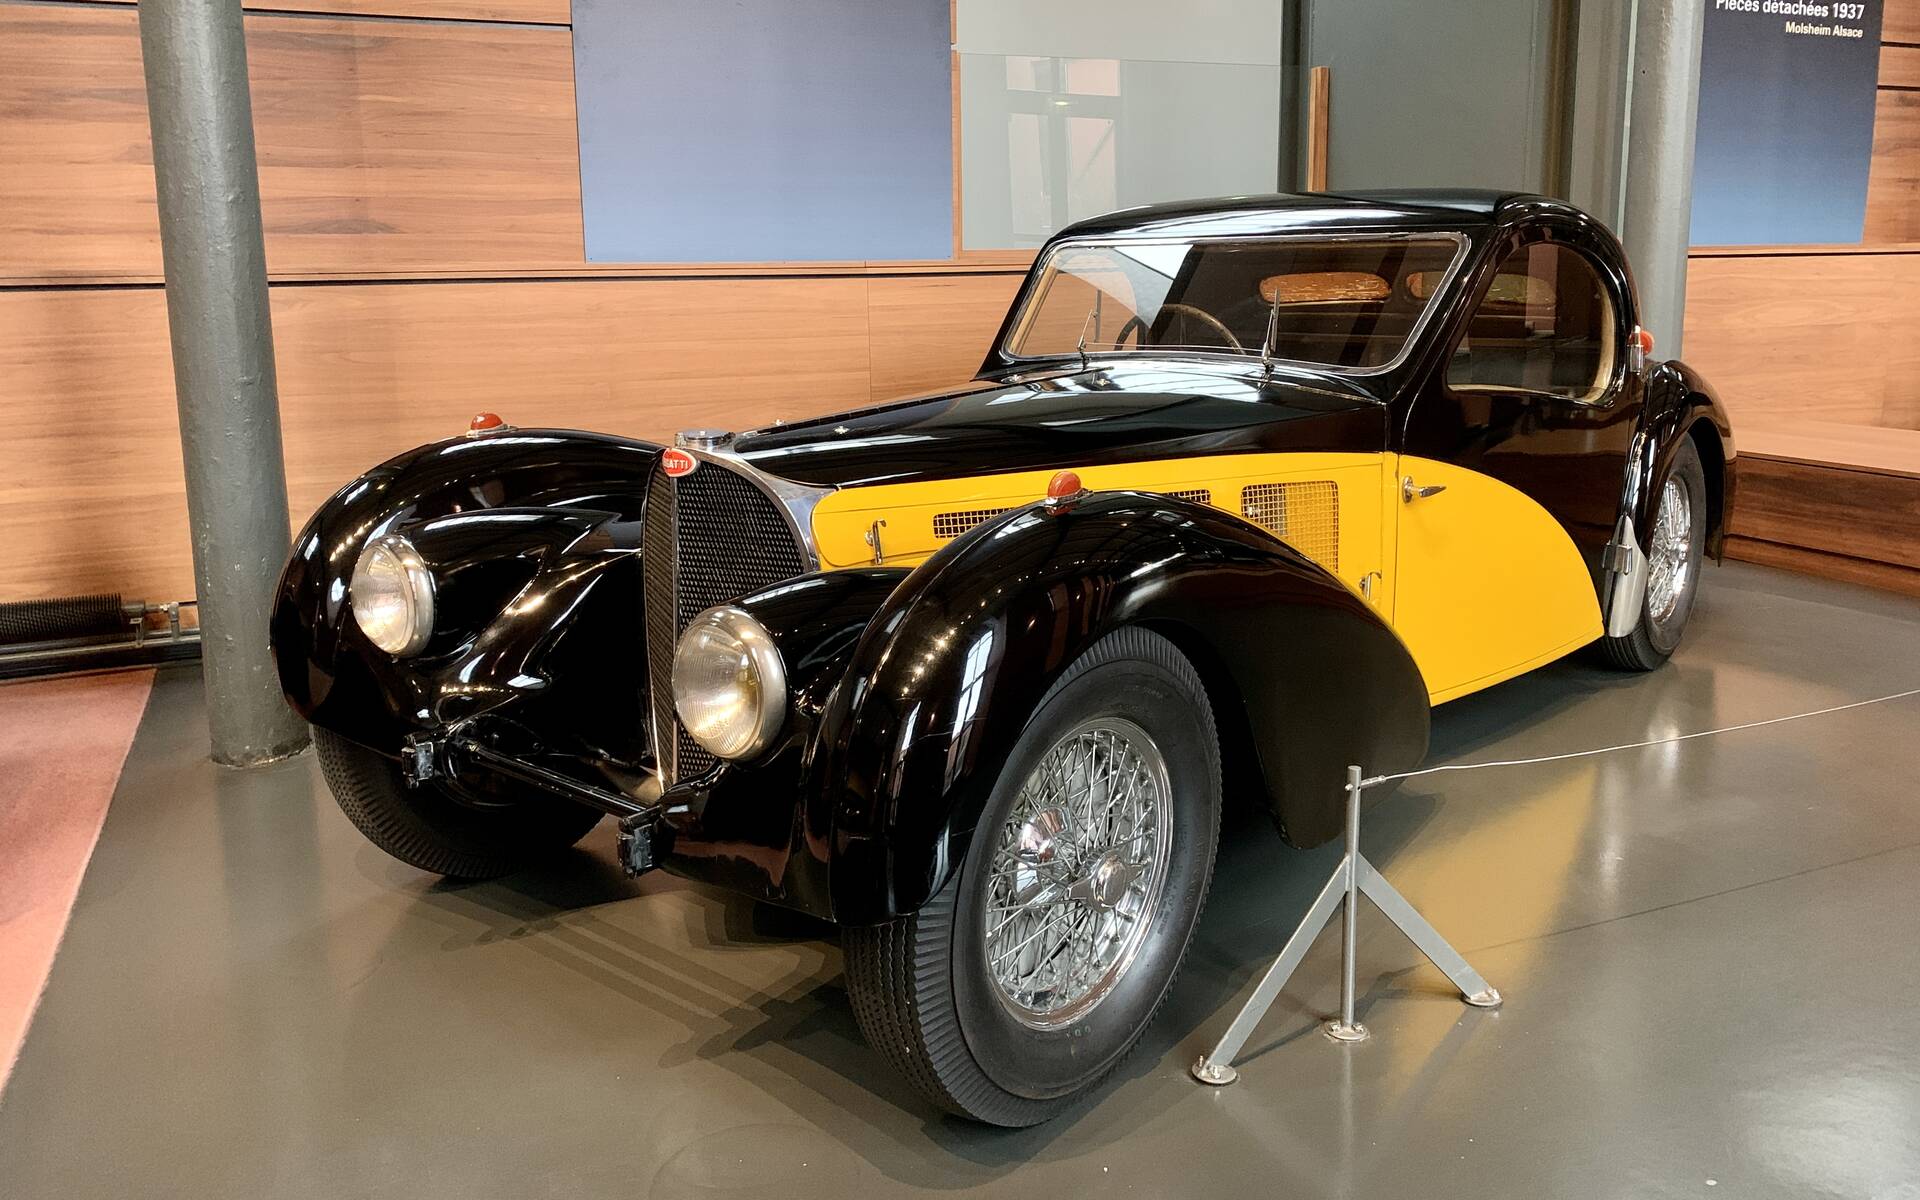 En photos : une centaine de Bugatti réunies dans un même musée 503108-en-photos-des-dizaines-de-bugatti-reunies-dans-un-meme-musee